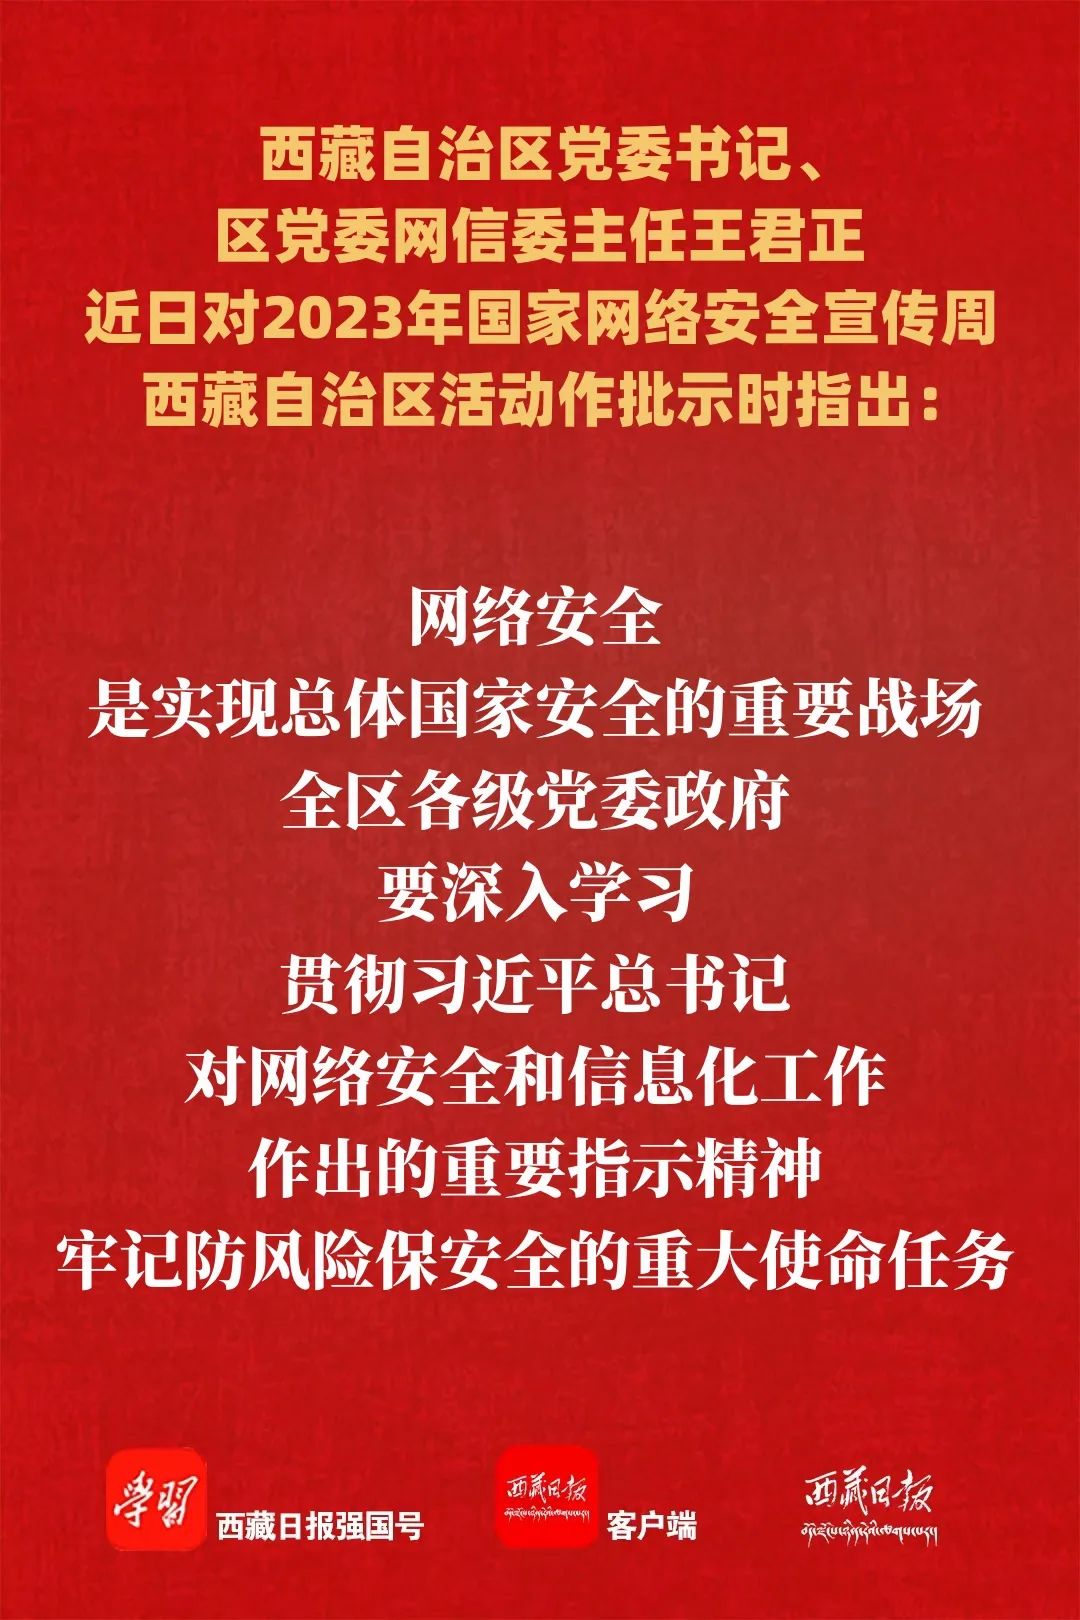 王君正对2023年国家网络安全宣传周西藏自治区活动作出批示